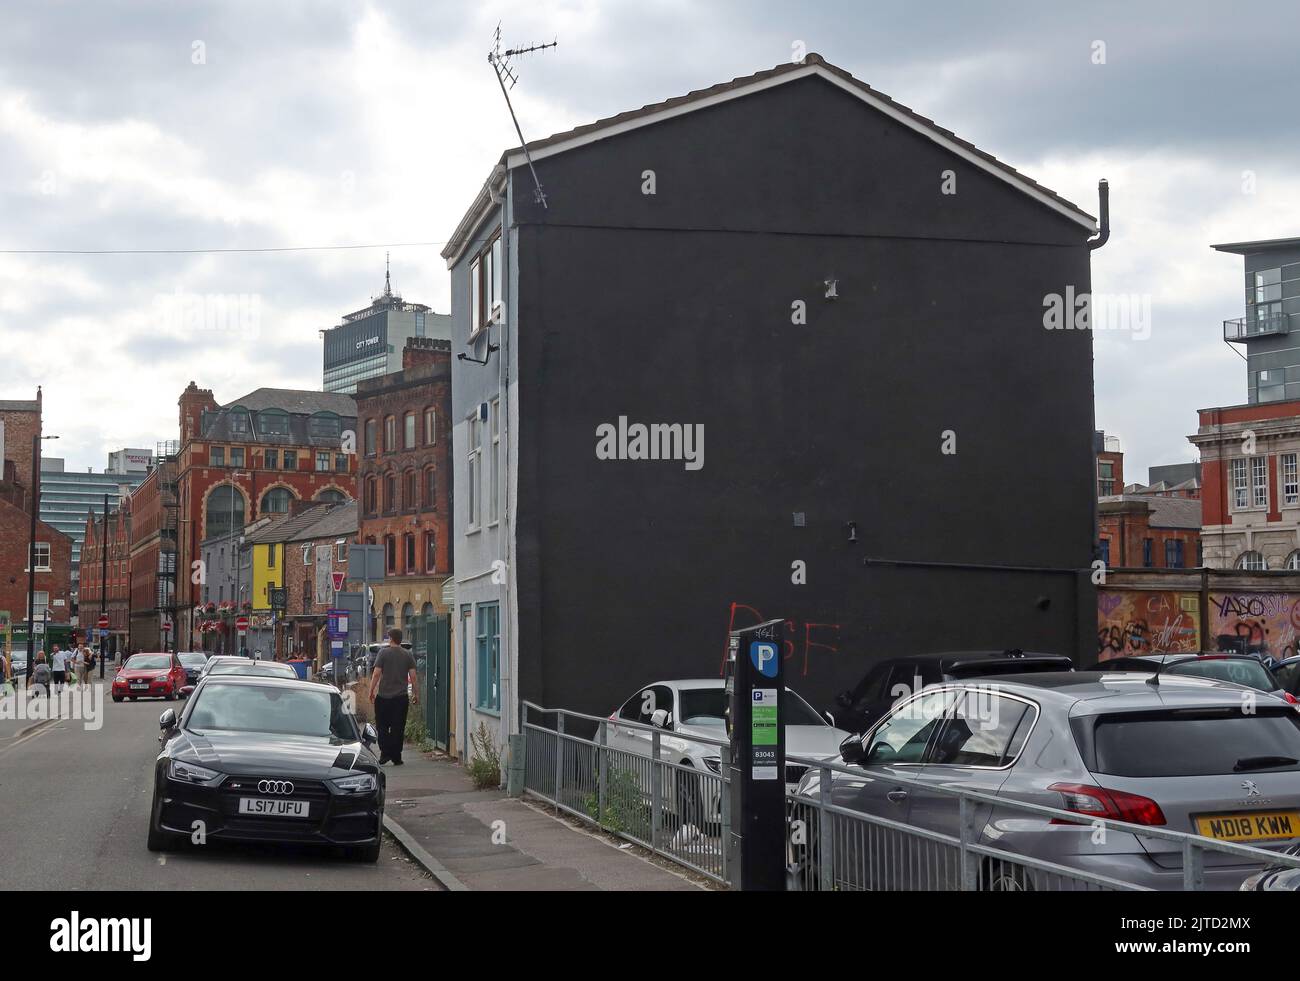 Port Street, Manchester, site de l'ancienne fresque Ian Curtis, par Akse P19, peint par le rappeur Aitch label 2022 août NQ4, Angleterre, Royaume-Uni Banque D'Images